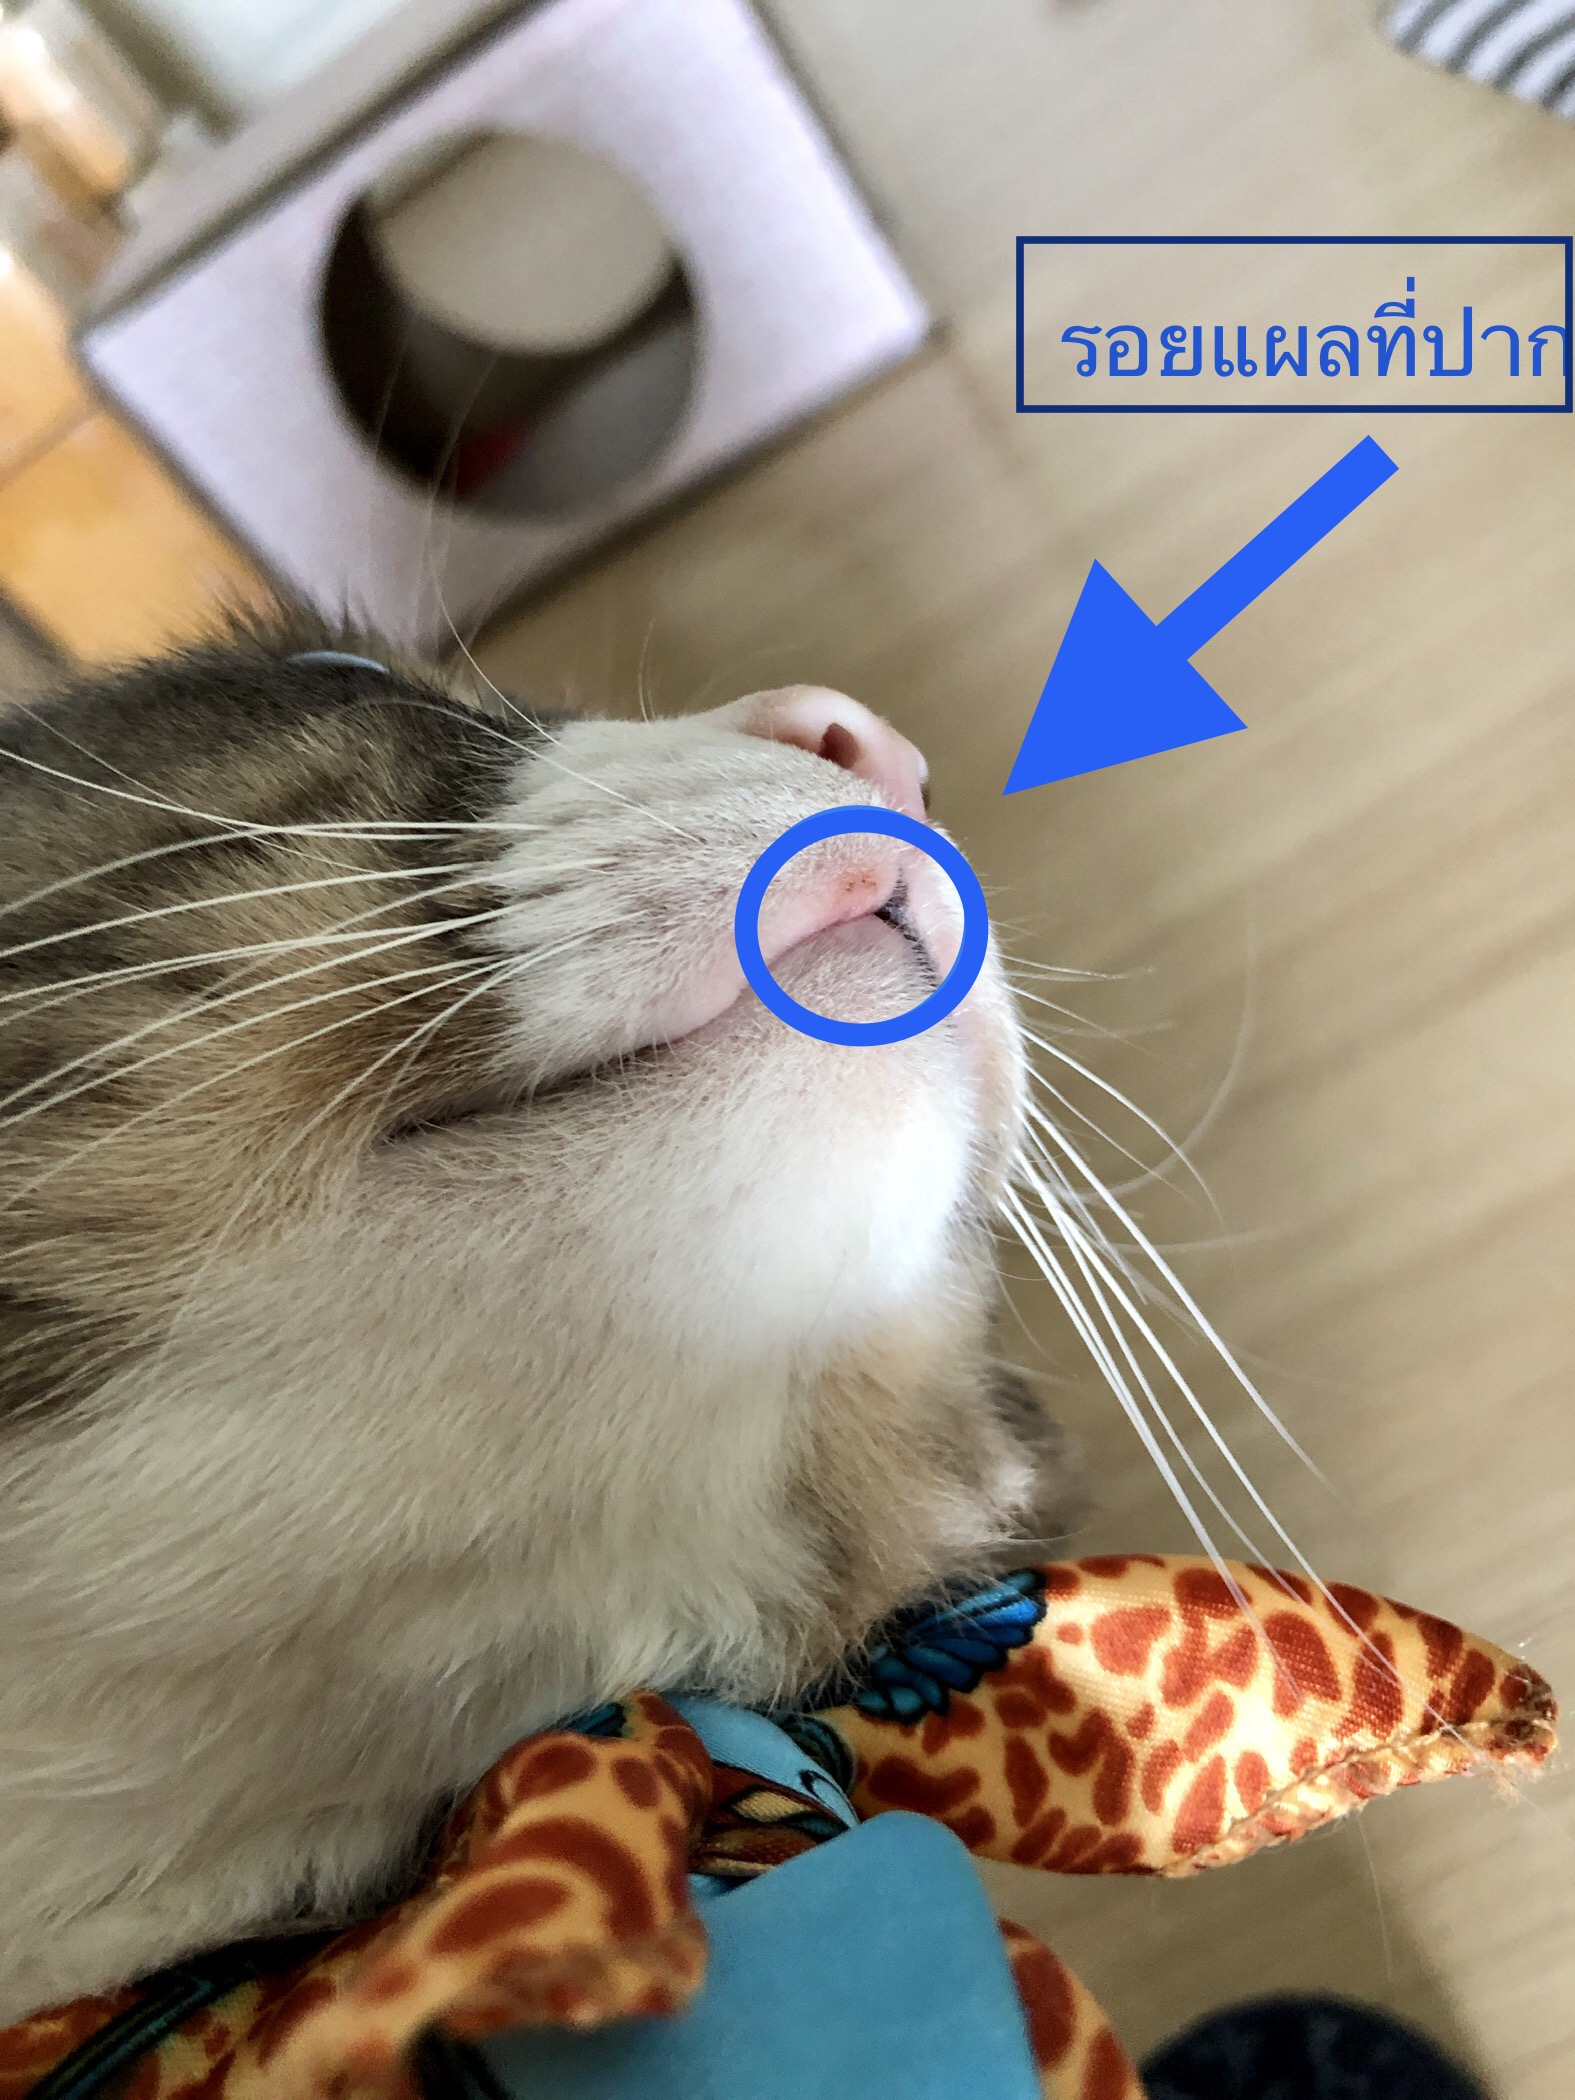 จู่ๆน้องแมวก็มีแผลที่ปาก อยากทราบว่าอาการแบบนี้อันตรายต่อน้องแมวไหมคะ